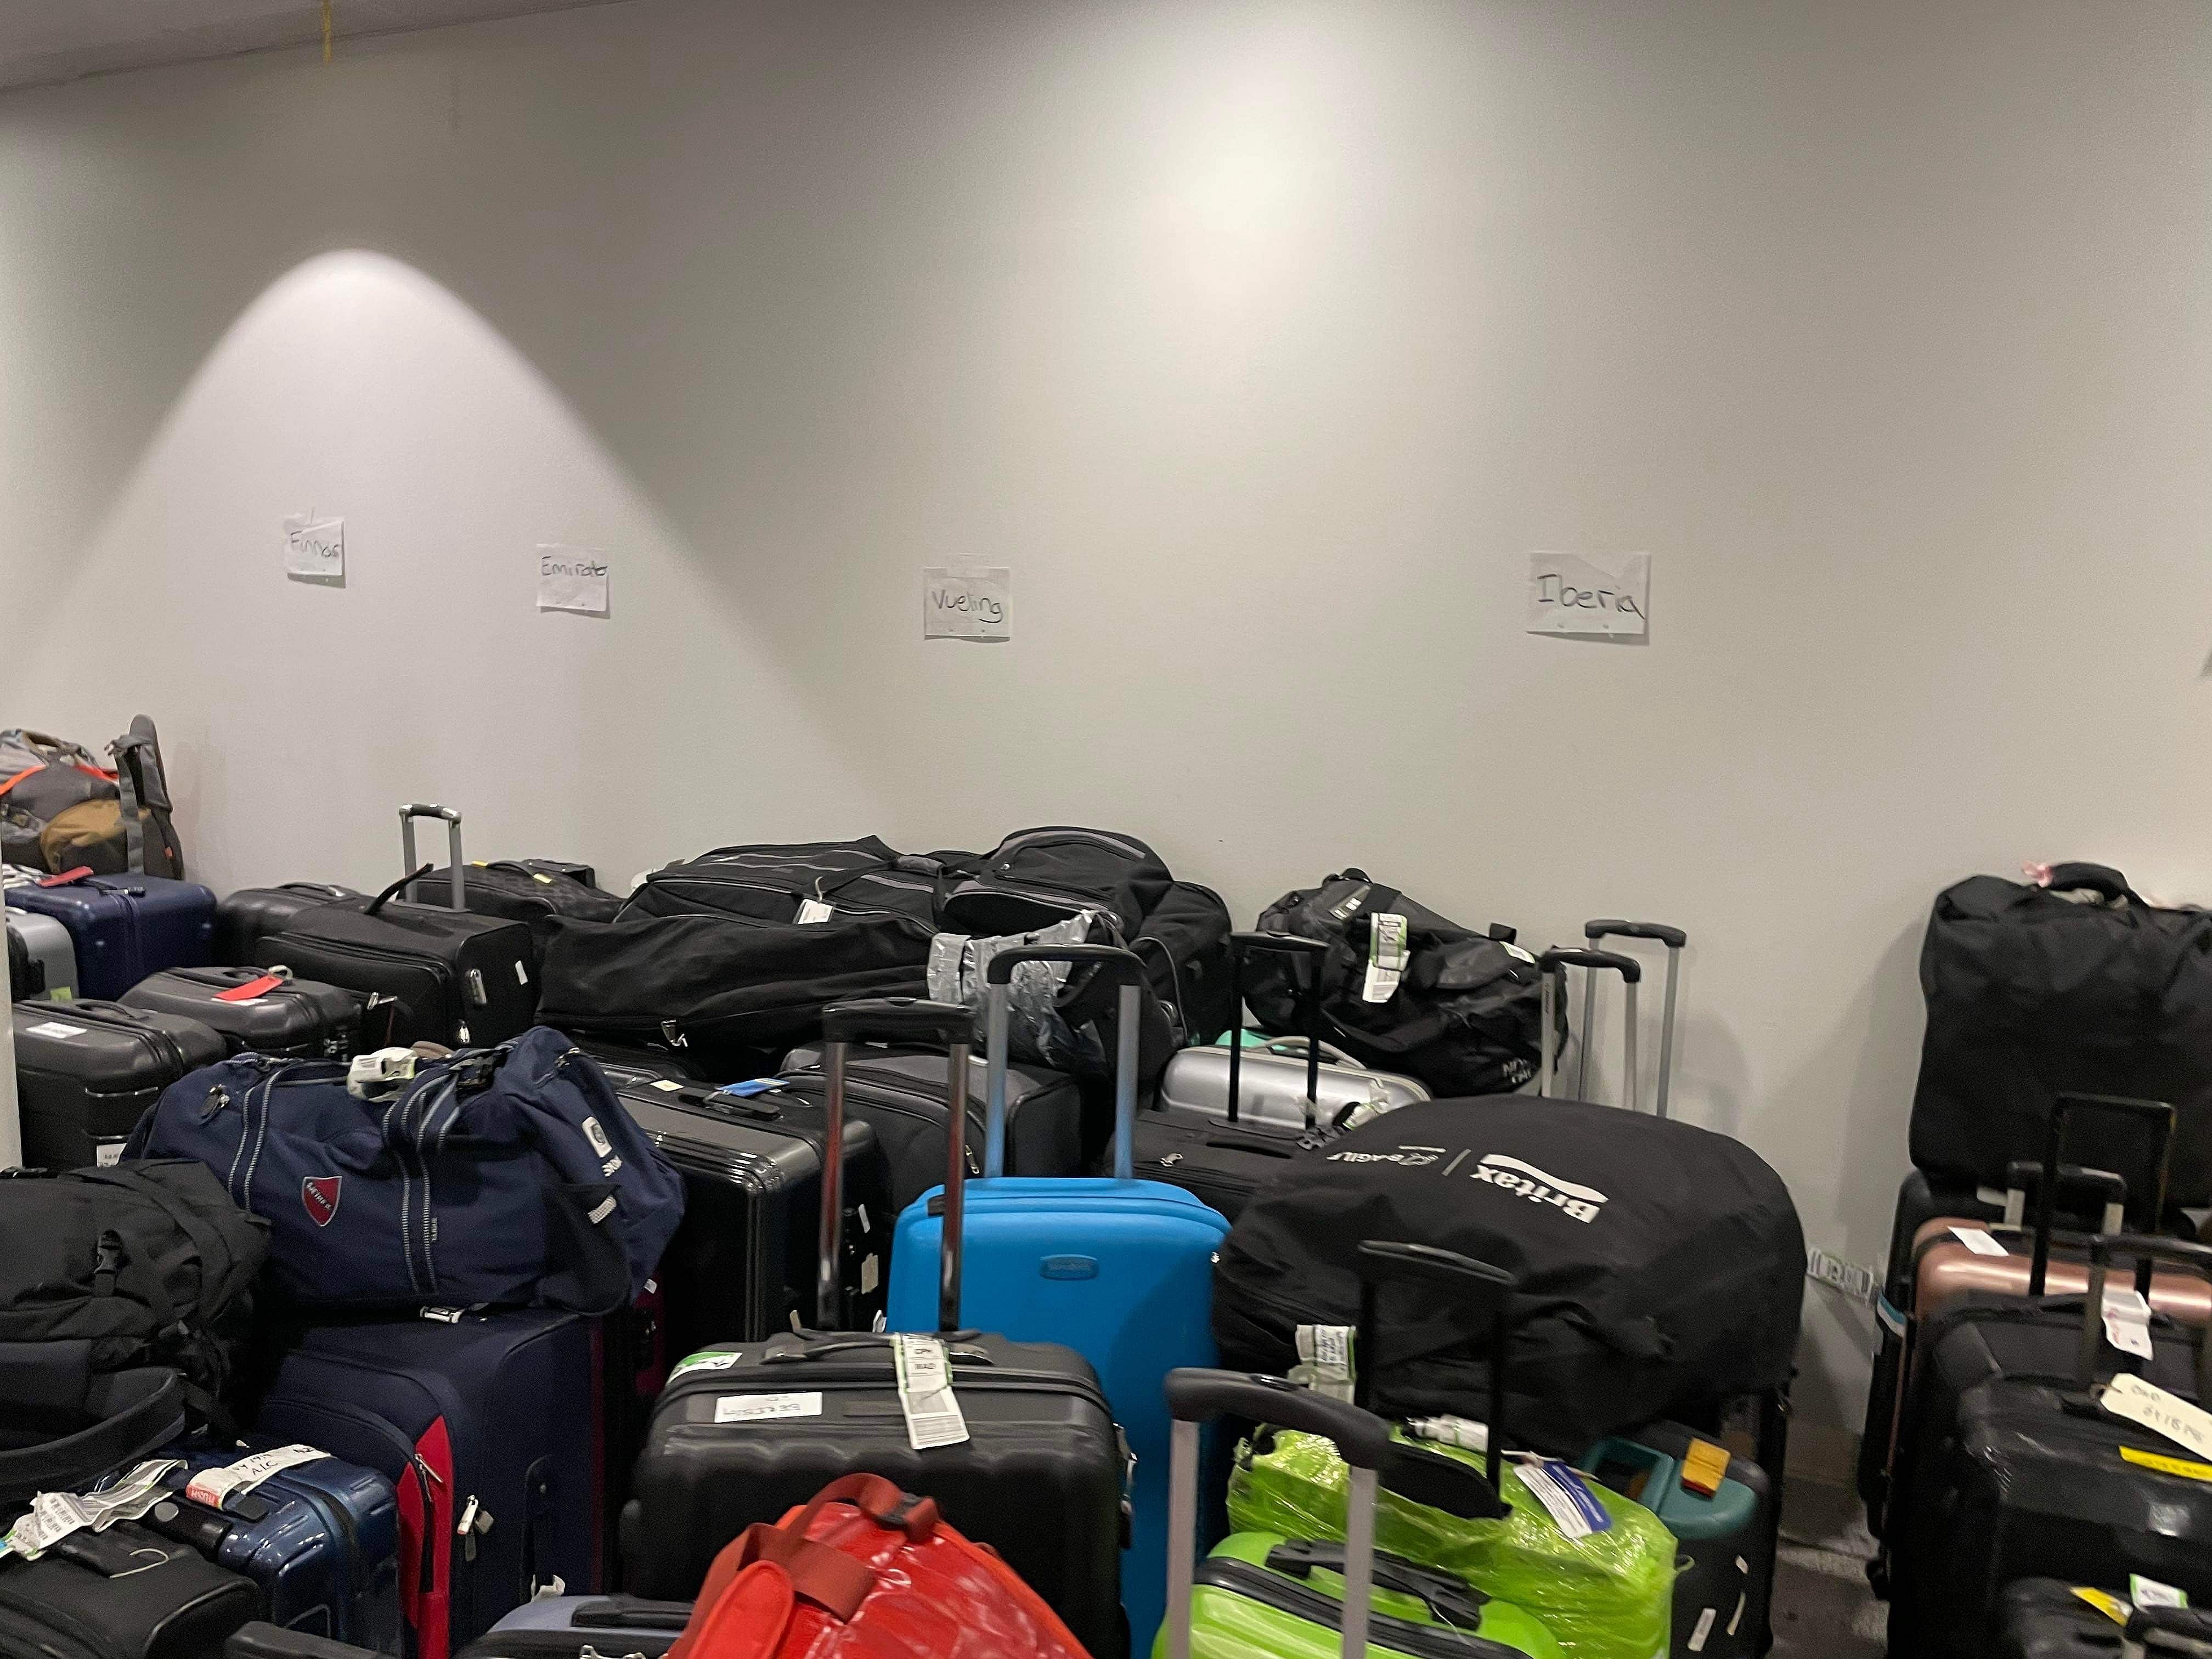 Har du også undret dig? Derfor det med “efterladte” kufferter i lufthavnen | TV 2 Kosmopol